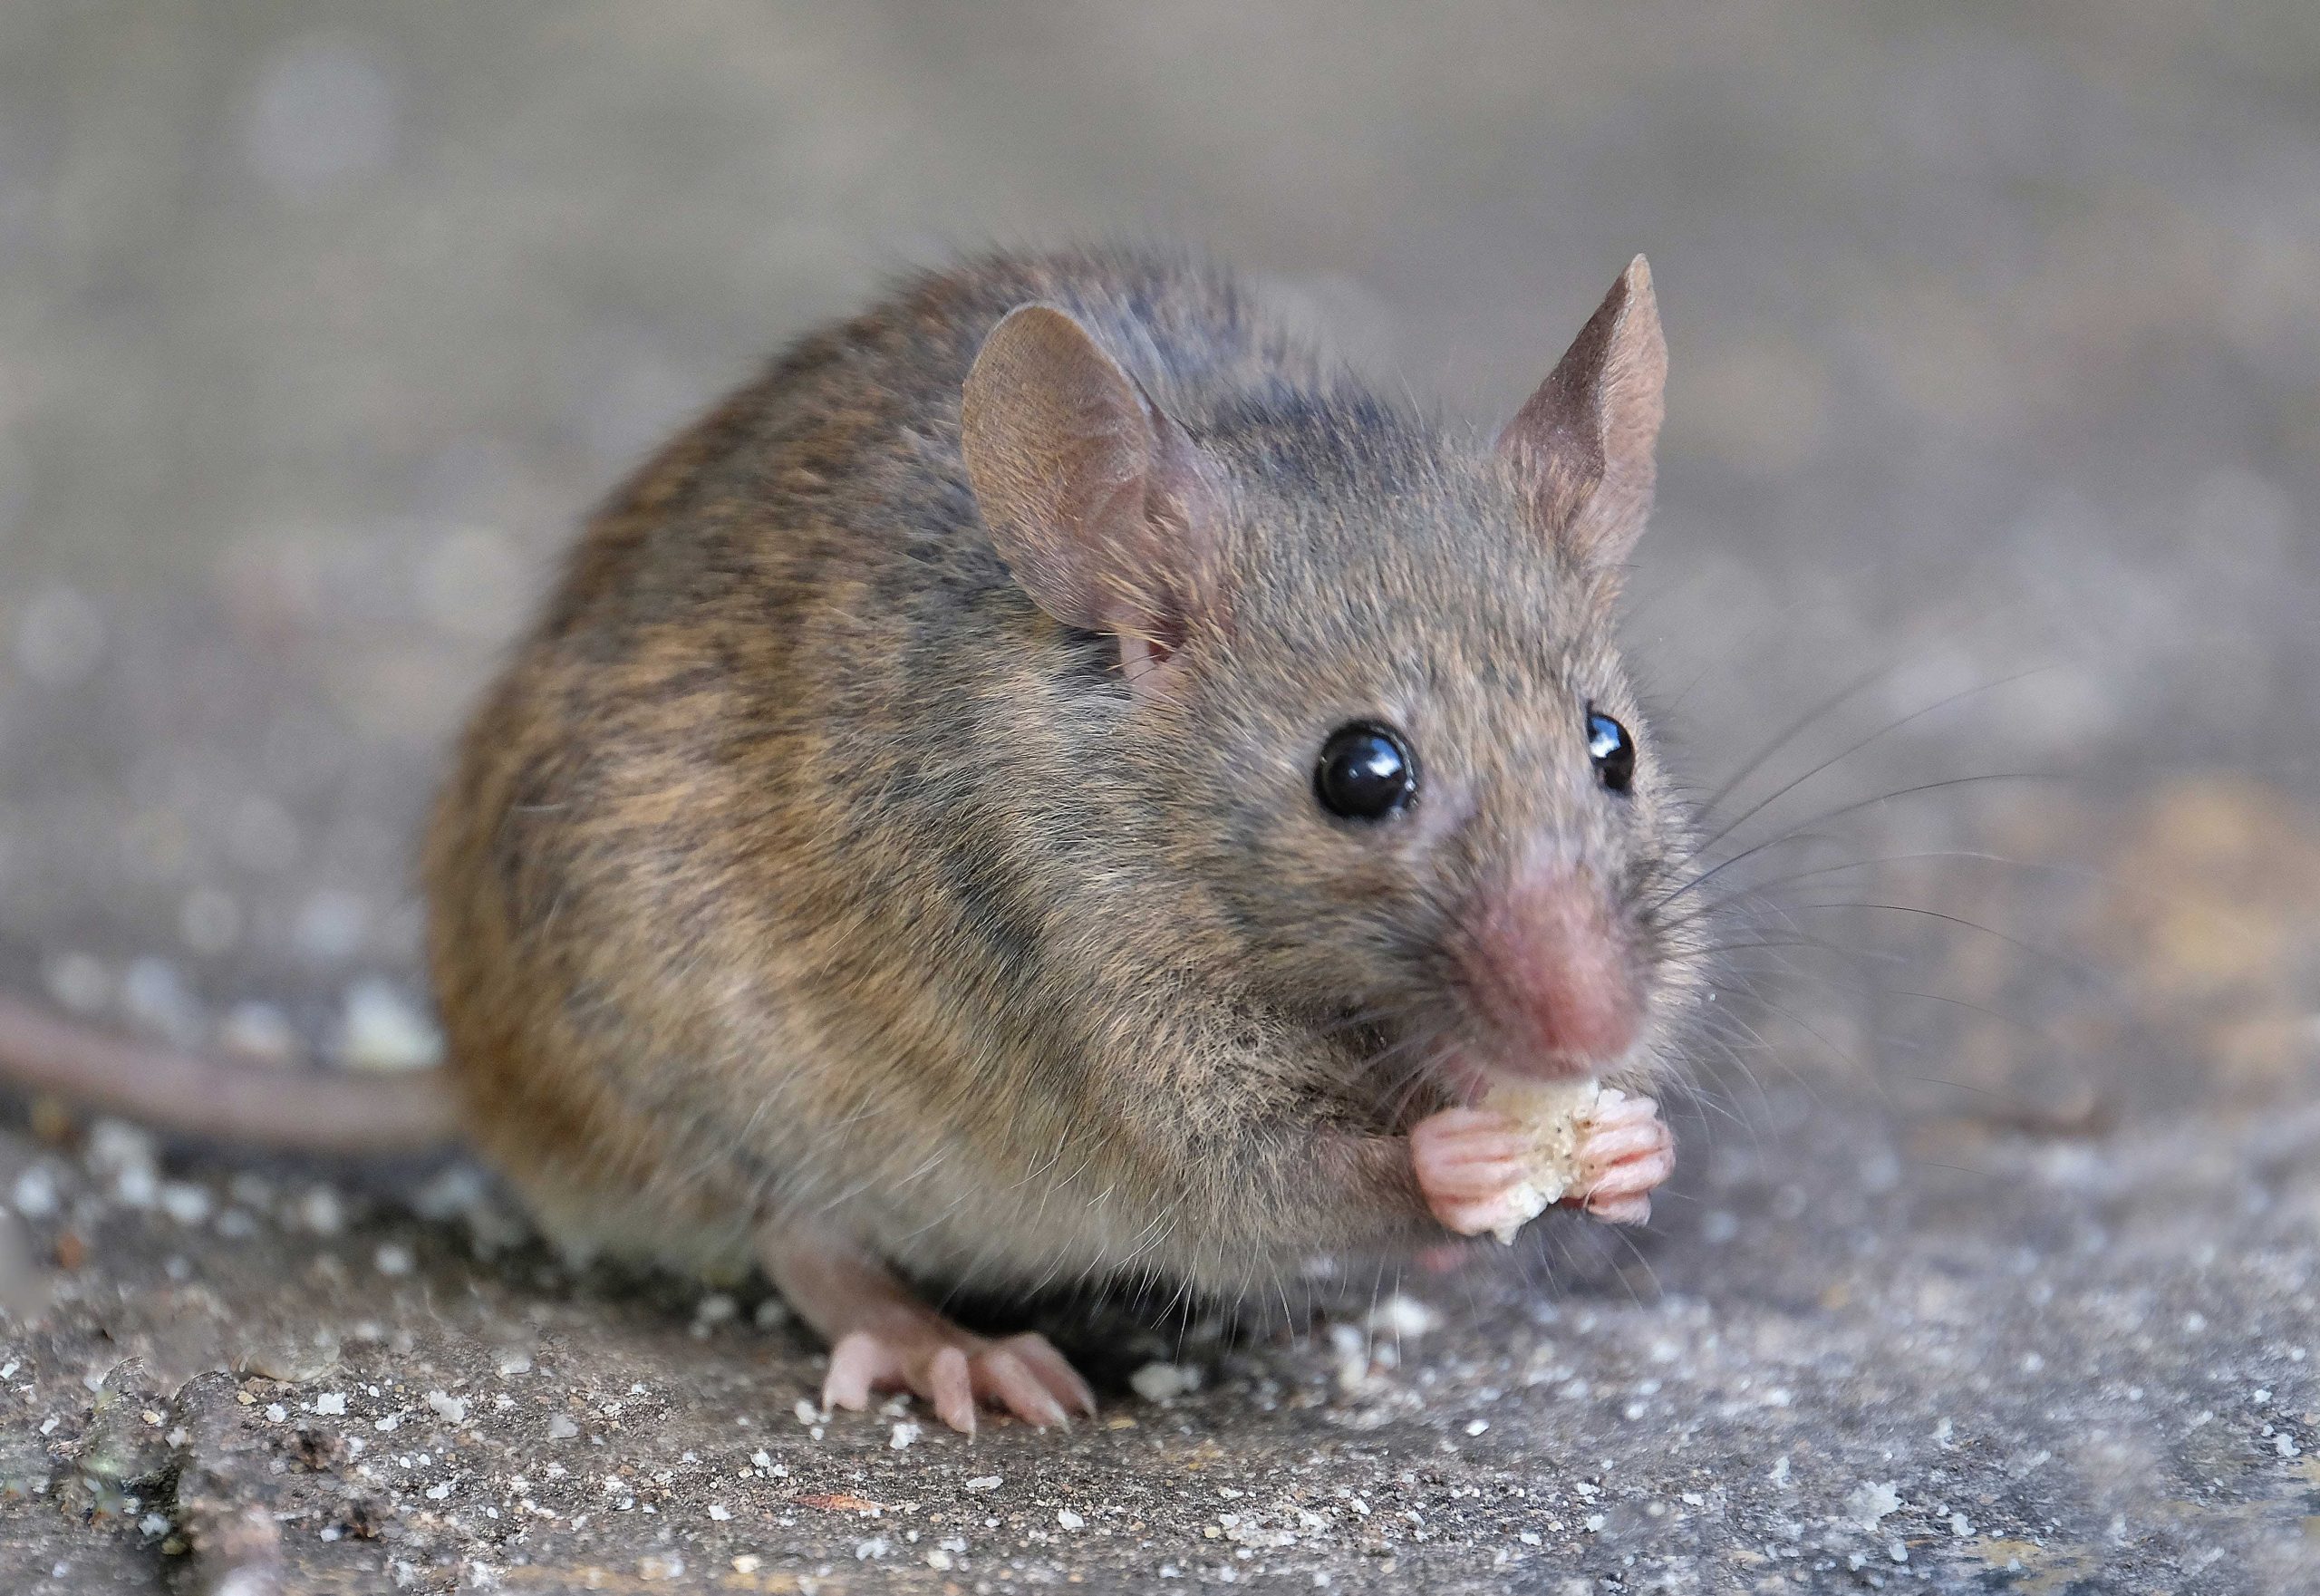 مرگ موش بهداشتی